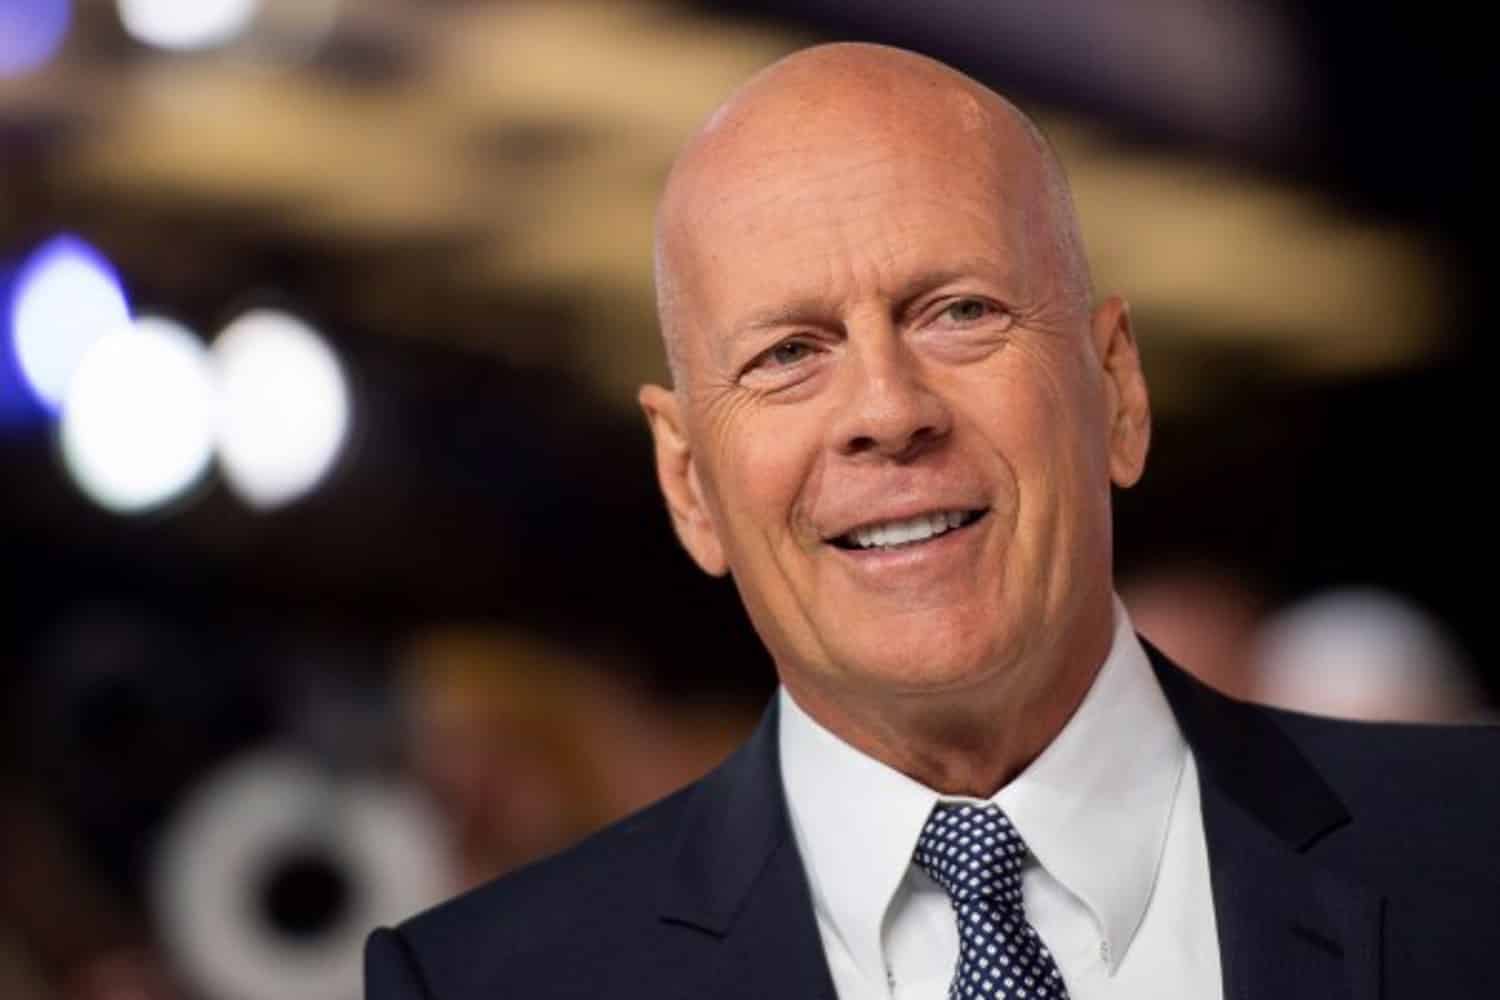 Bruce Willis en la gala de los Premios Oscar